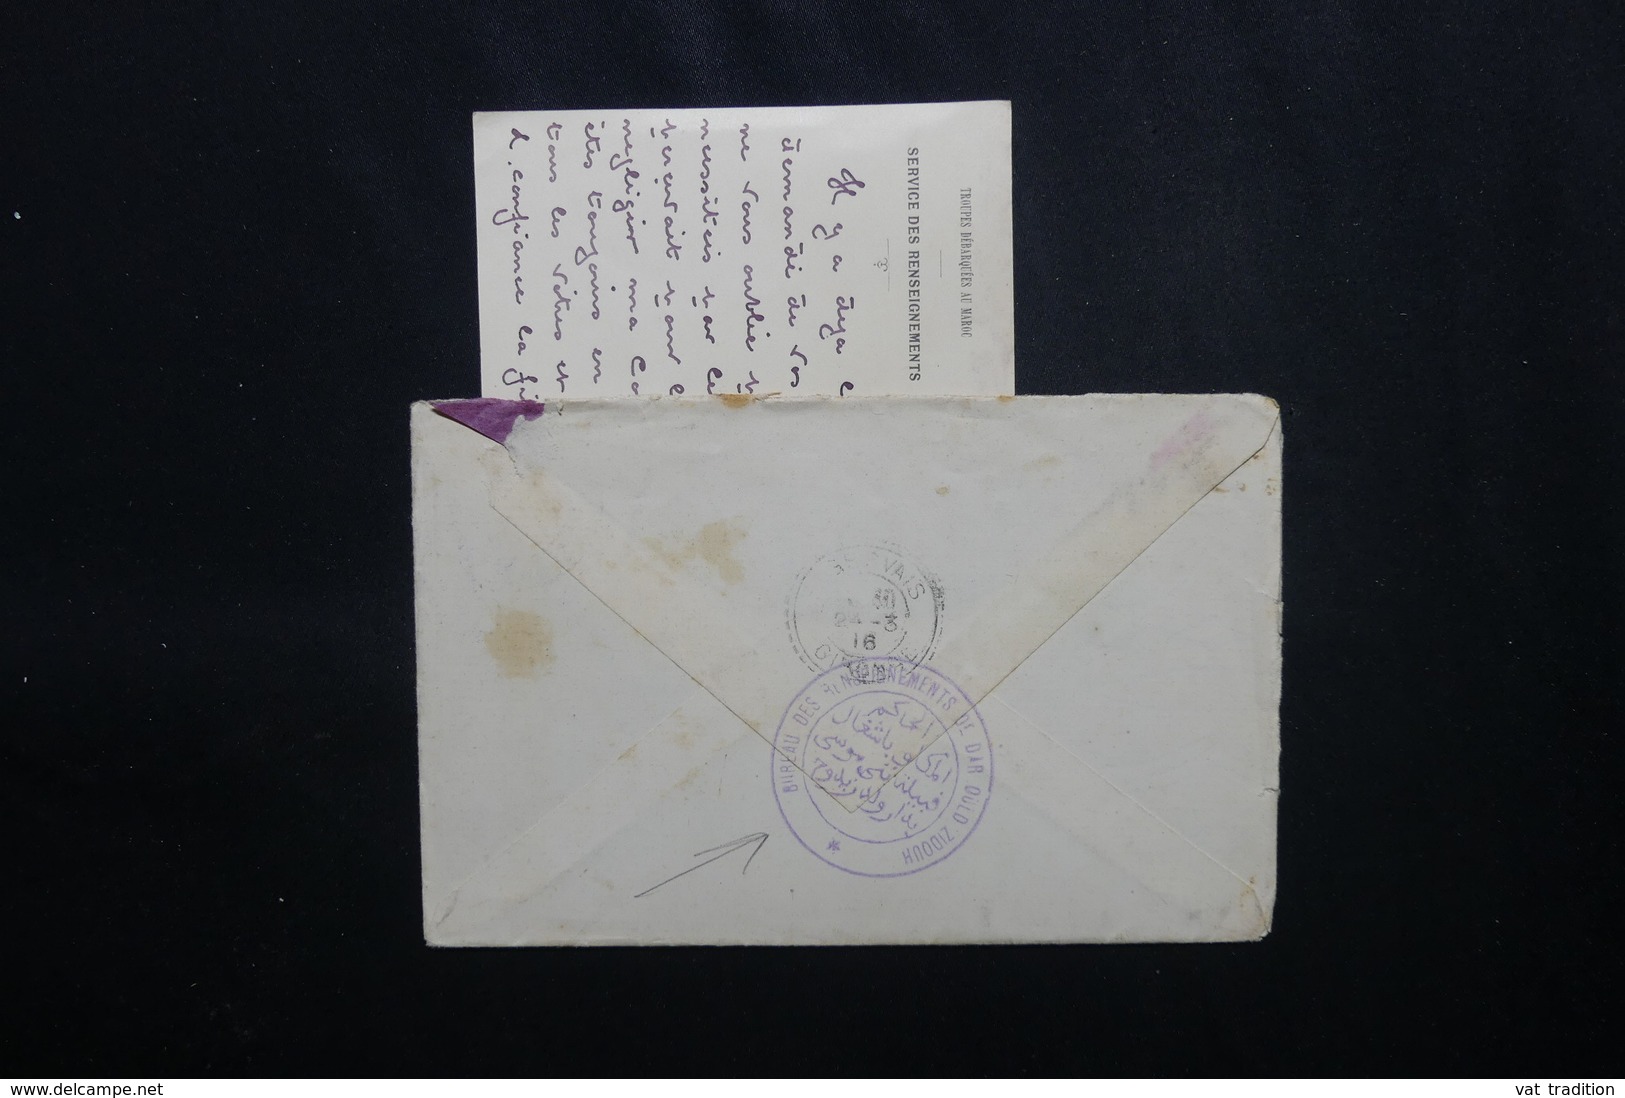 MAROC - Enveloppe + Contenu Du Service Des Renseignements De Dar Ould Zidouh Pour La France En 1916 -  L 51854 - Lettres & Documents